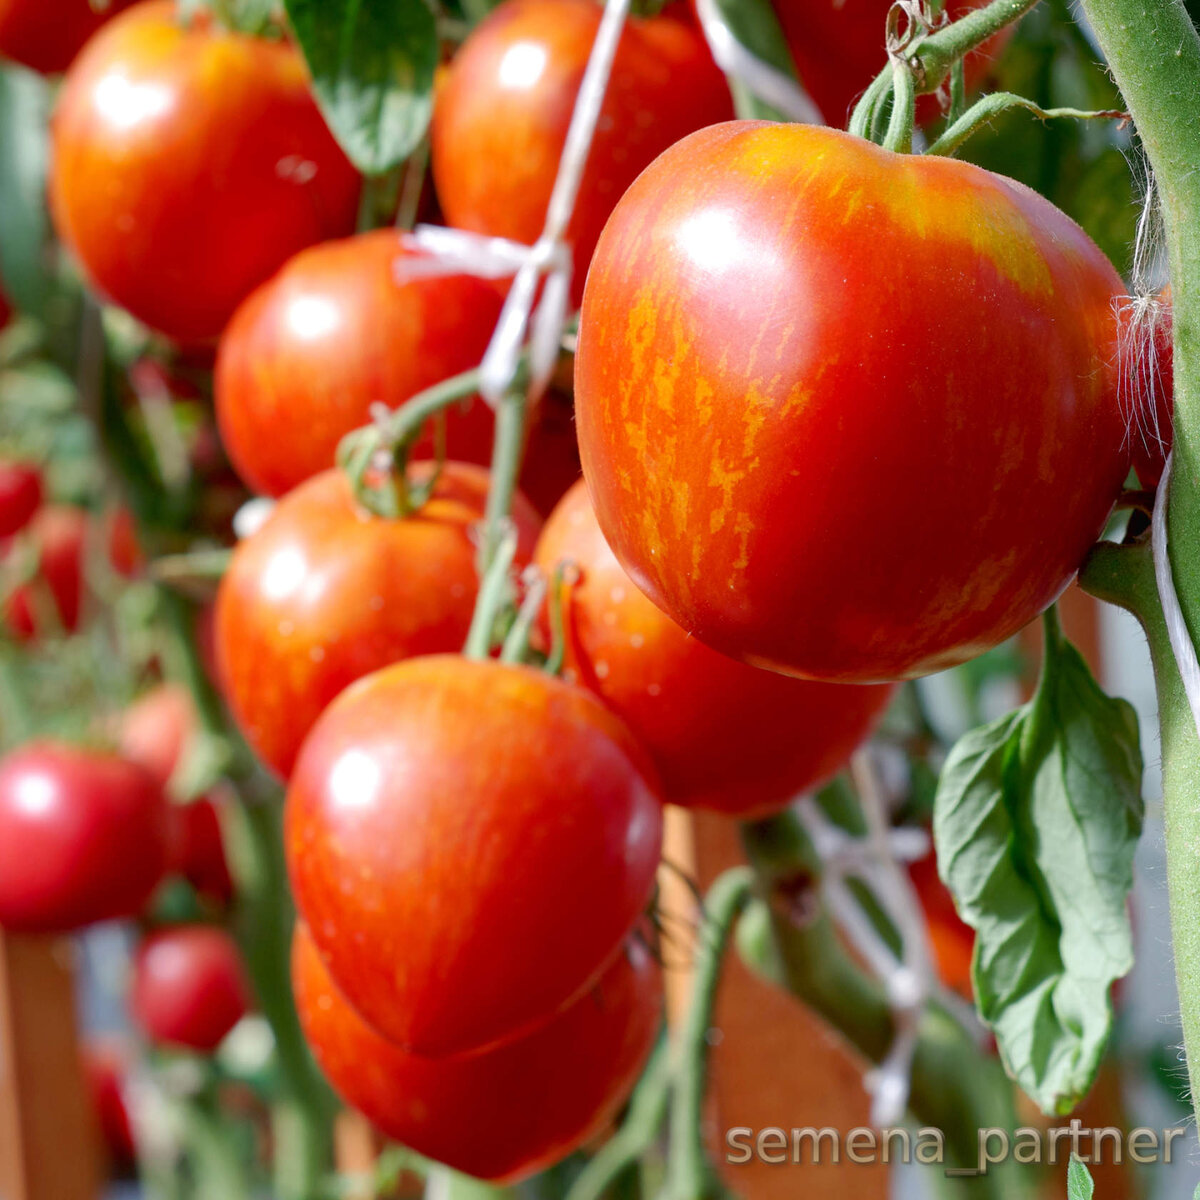 Семена партнёр томат сердцевидный полосатый